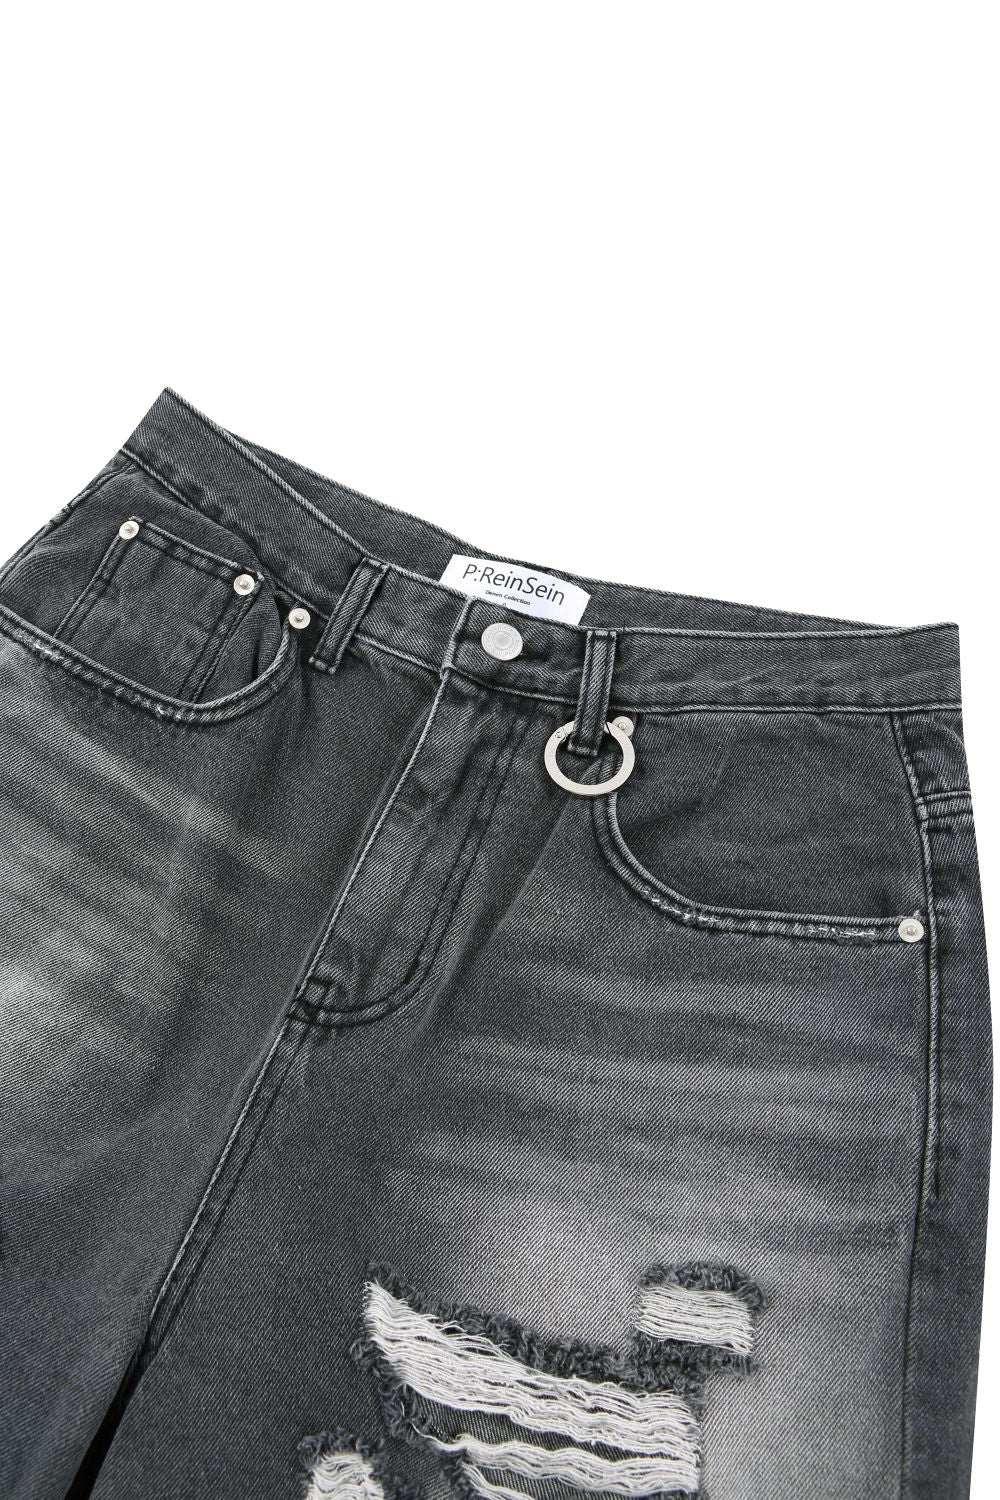 Vintage damaged wide black denim pants